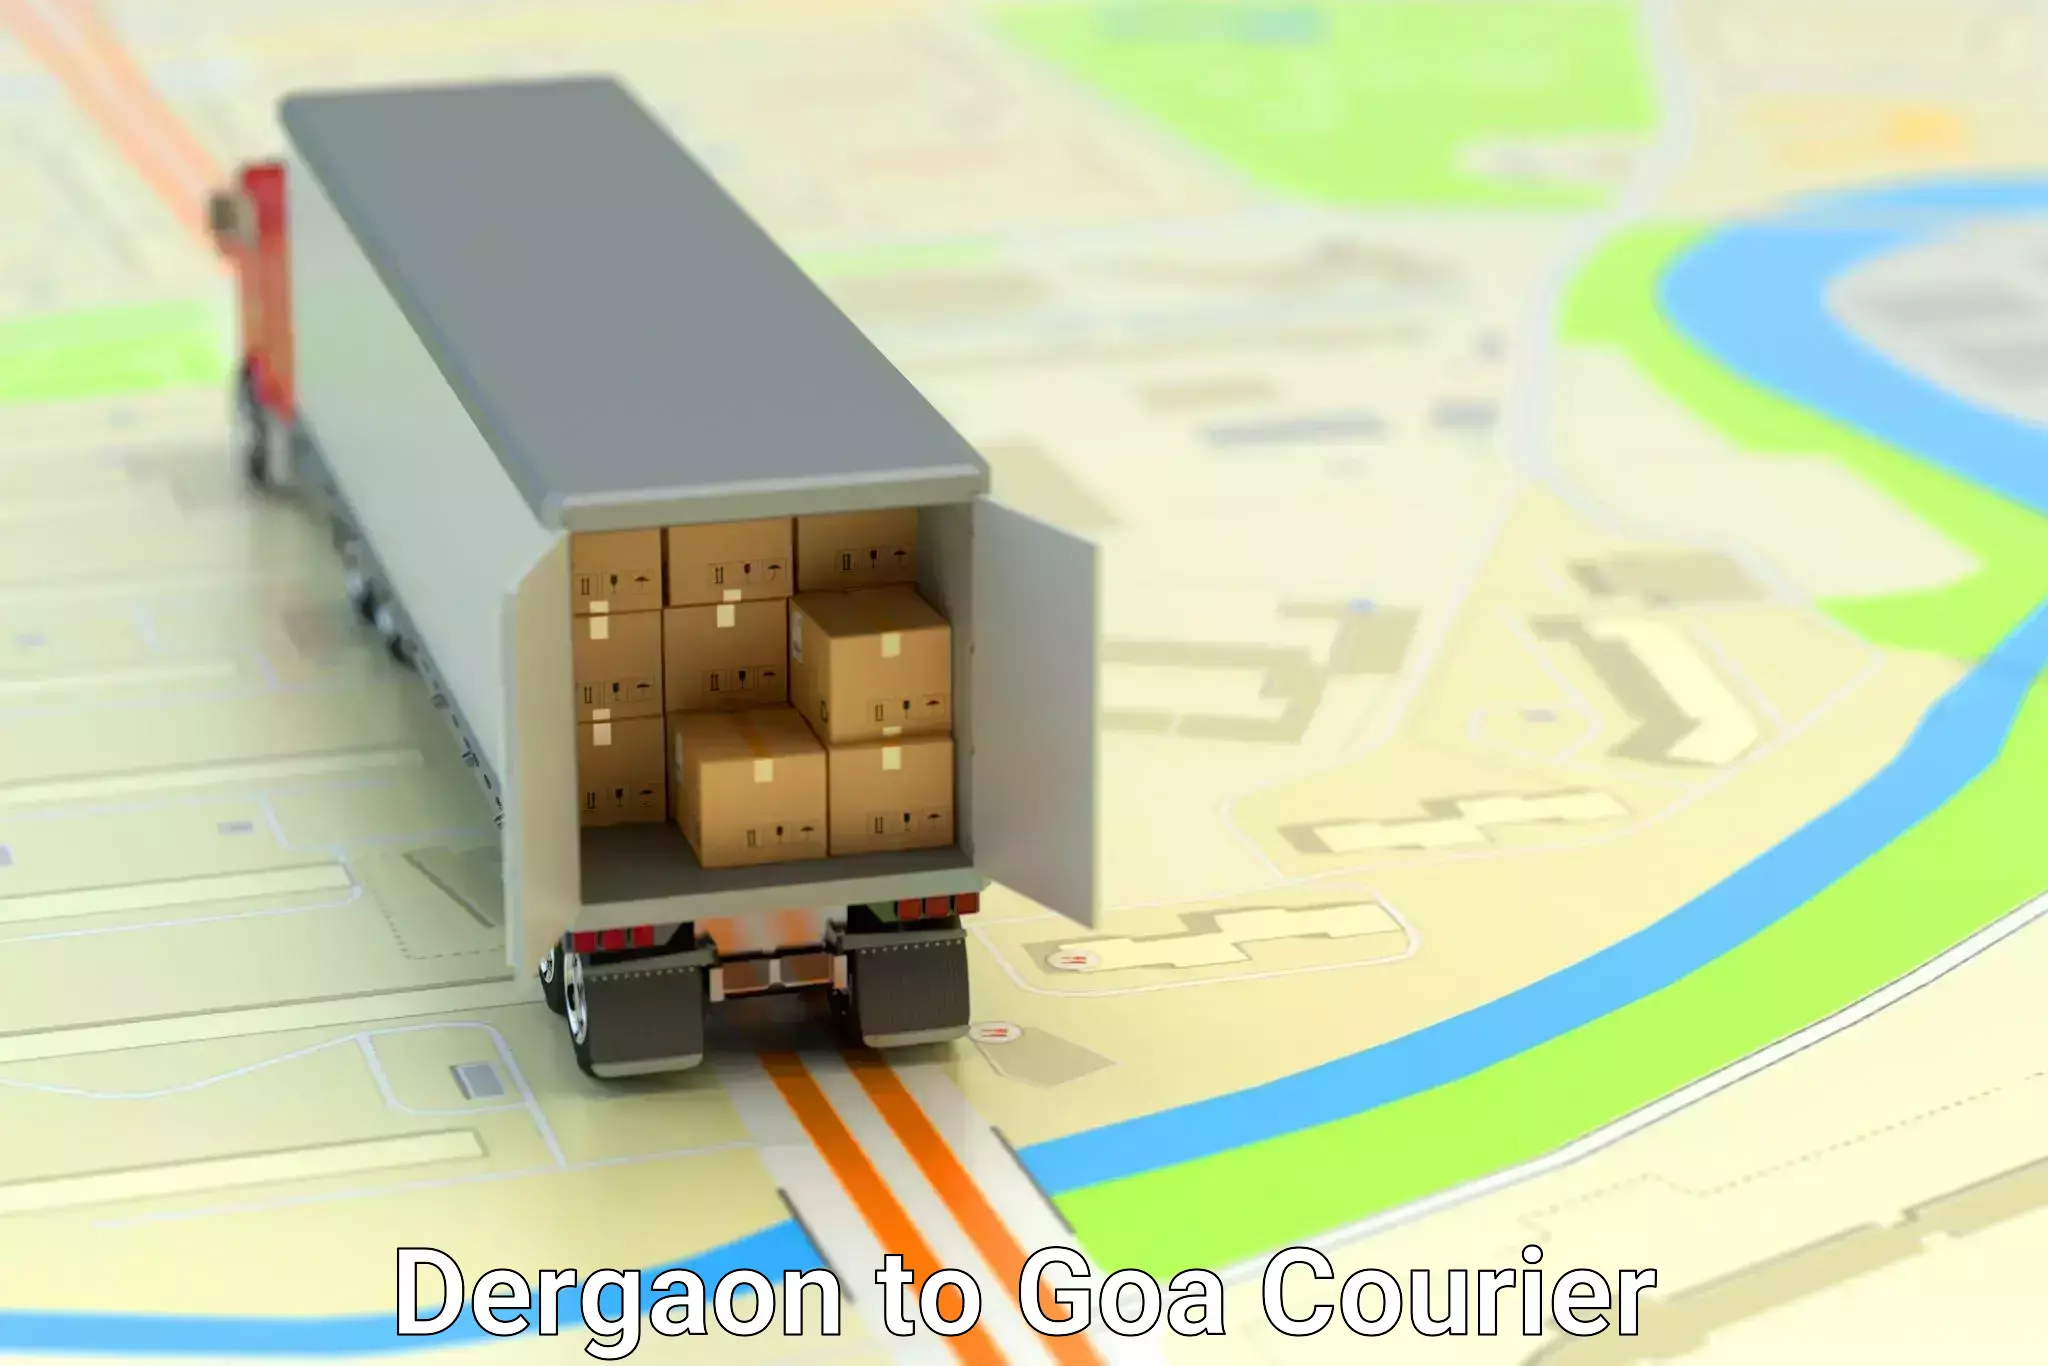 Courier service comparison in Dergaon to Mormugao Port